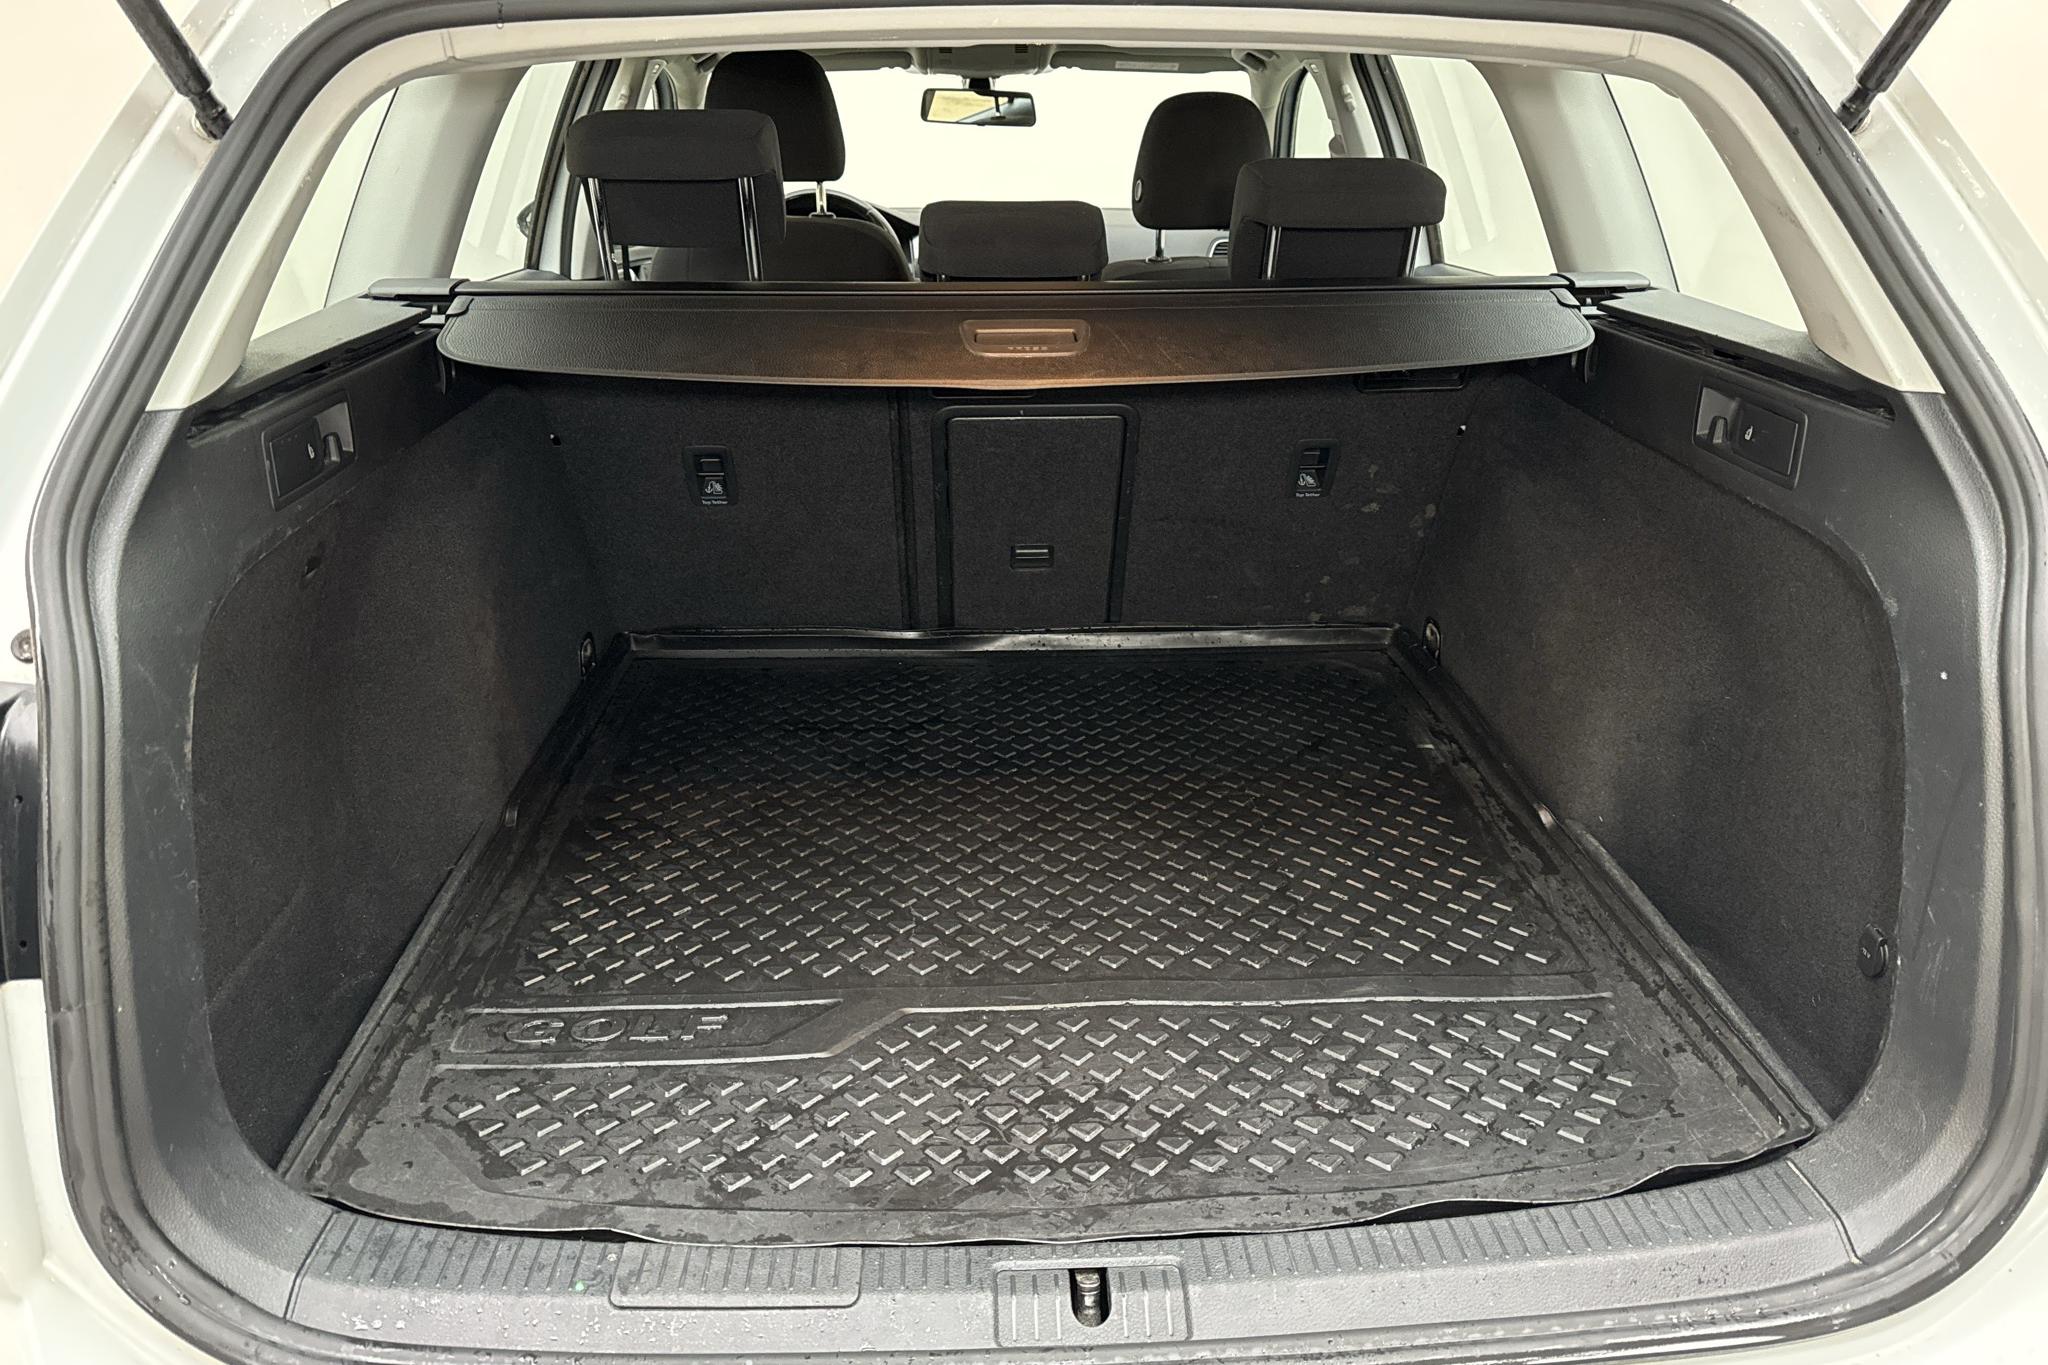 VW Golf VII 1.6 TDI Sportscombi (115hk) - 12 723 mil - Automat - vit - 2017